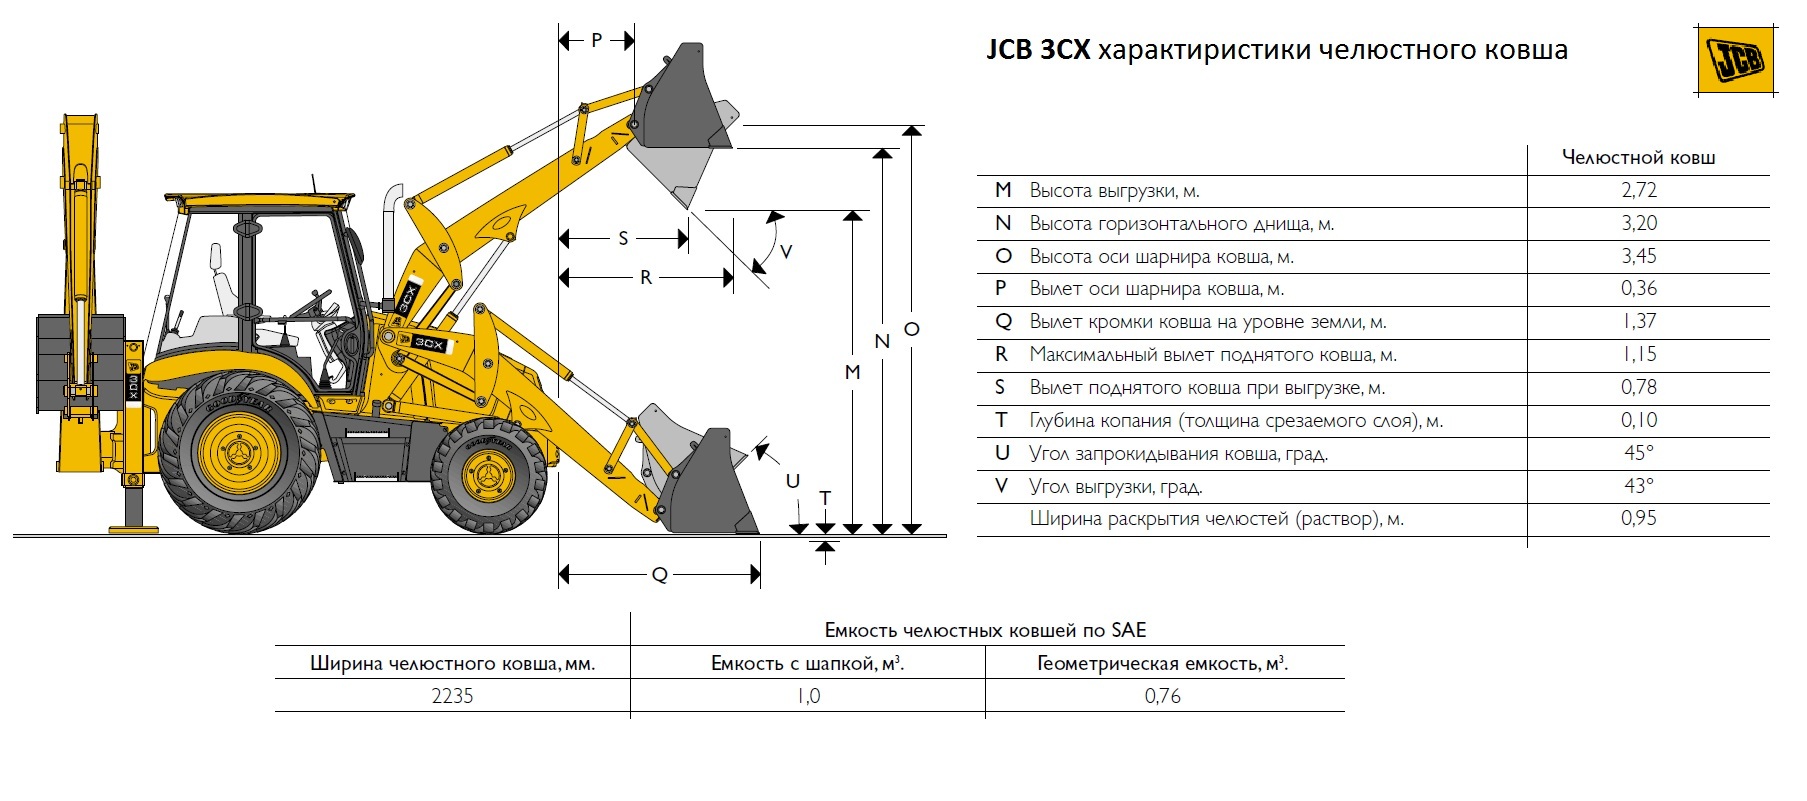 Модельный ряд и характеристики экскаваторов-погрузчиков JCB